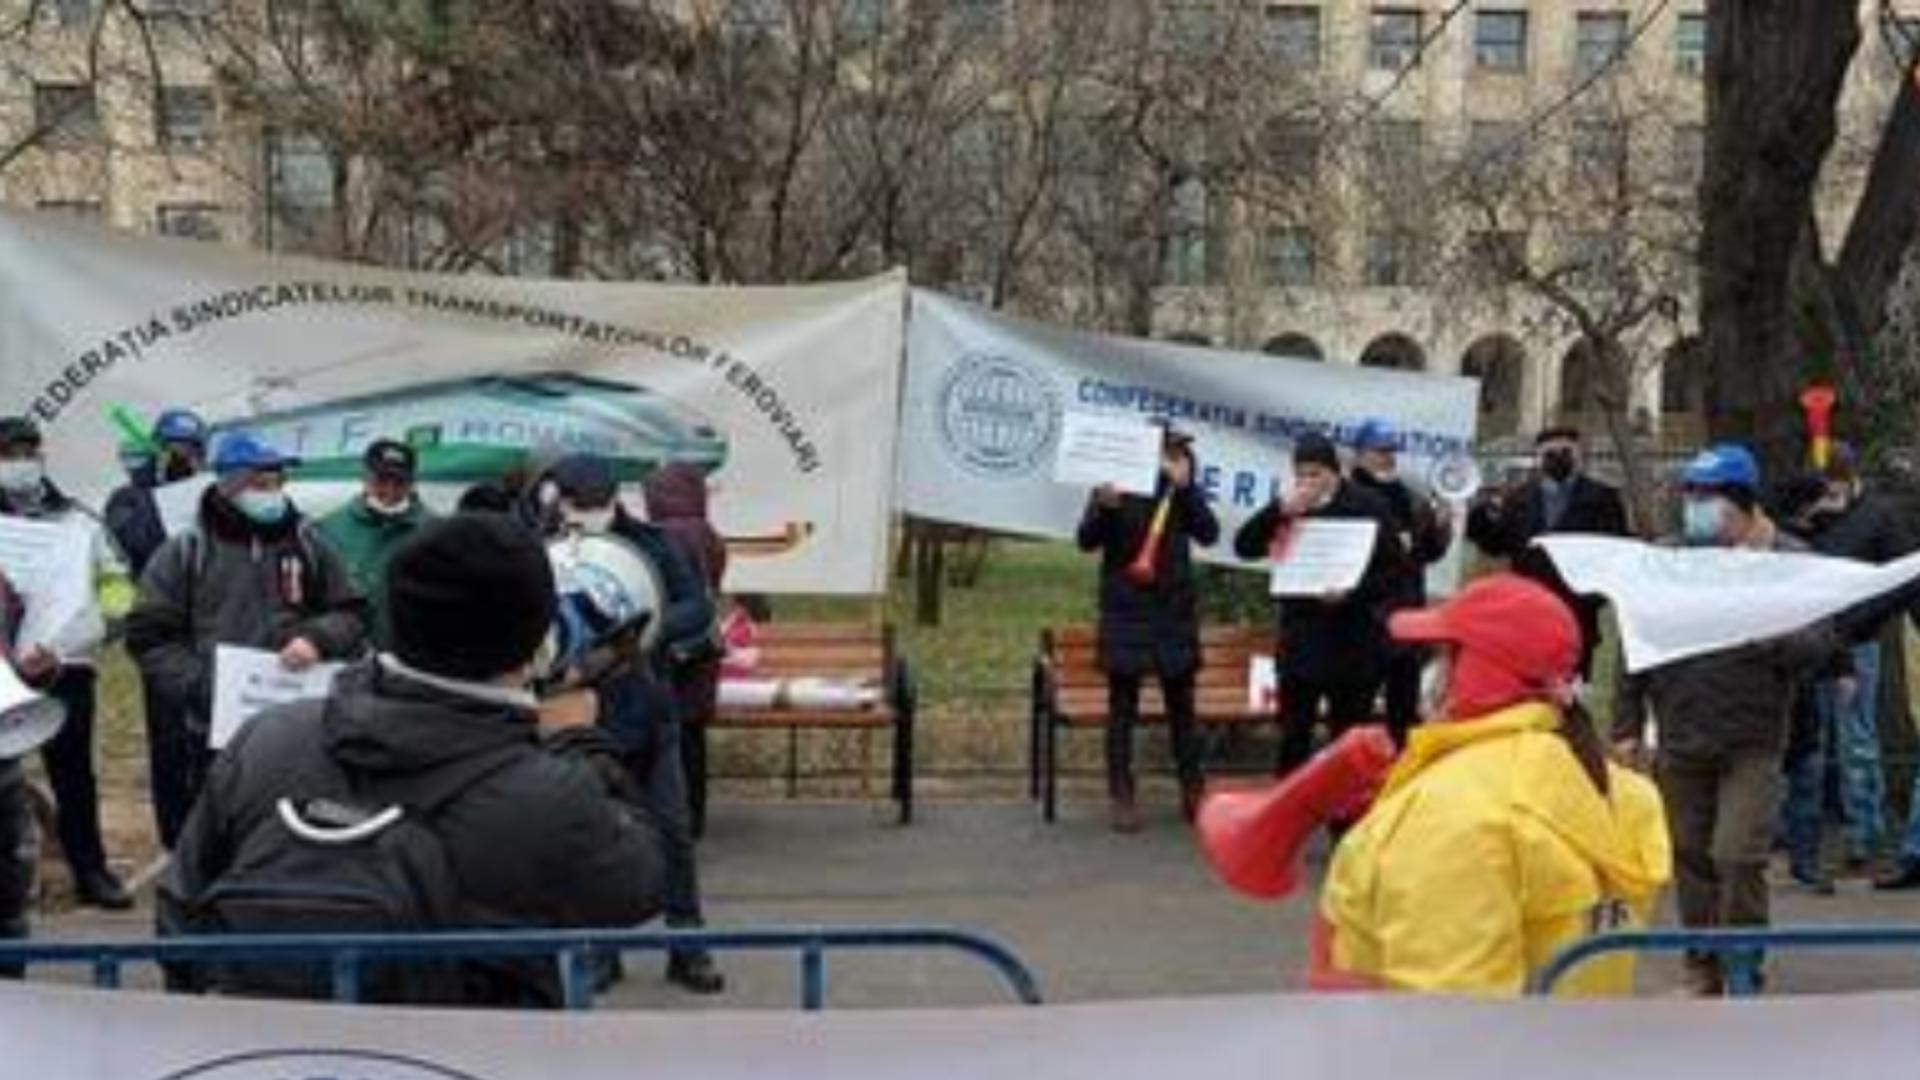 CEFERIȘTII protestează în fața Ministerului Transporturilor - De ce sunt acuzați guvernanții 